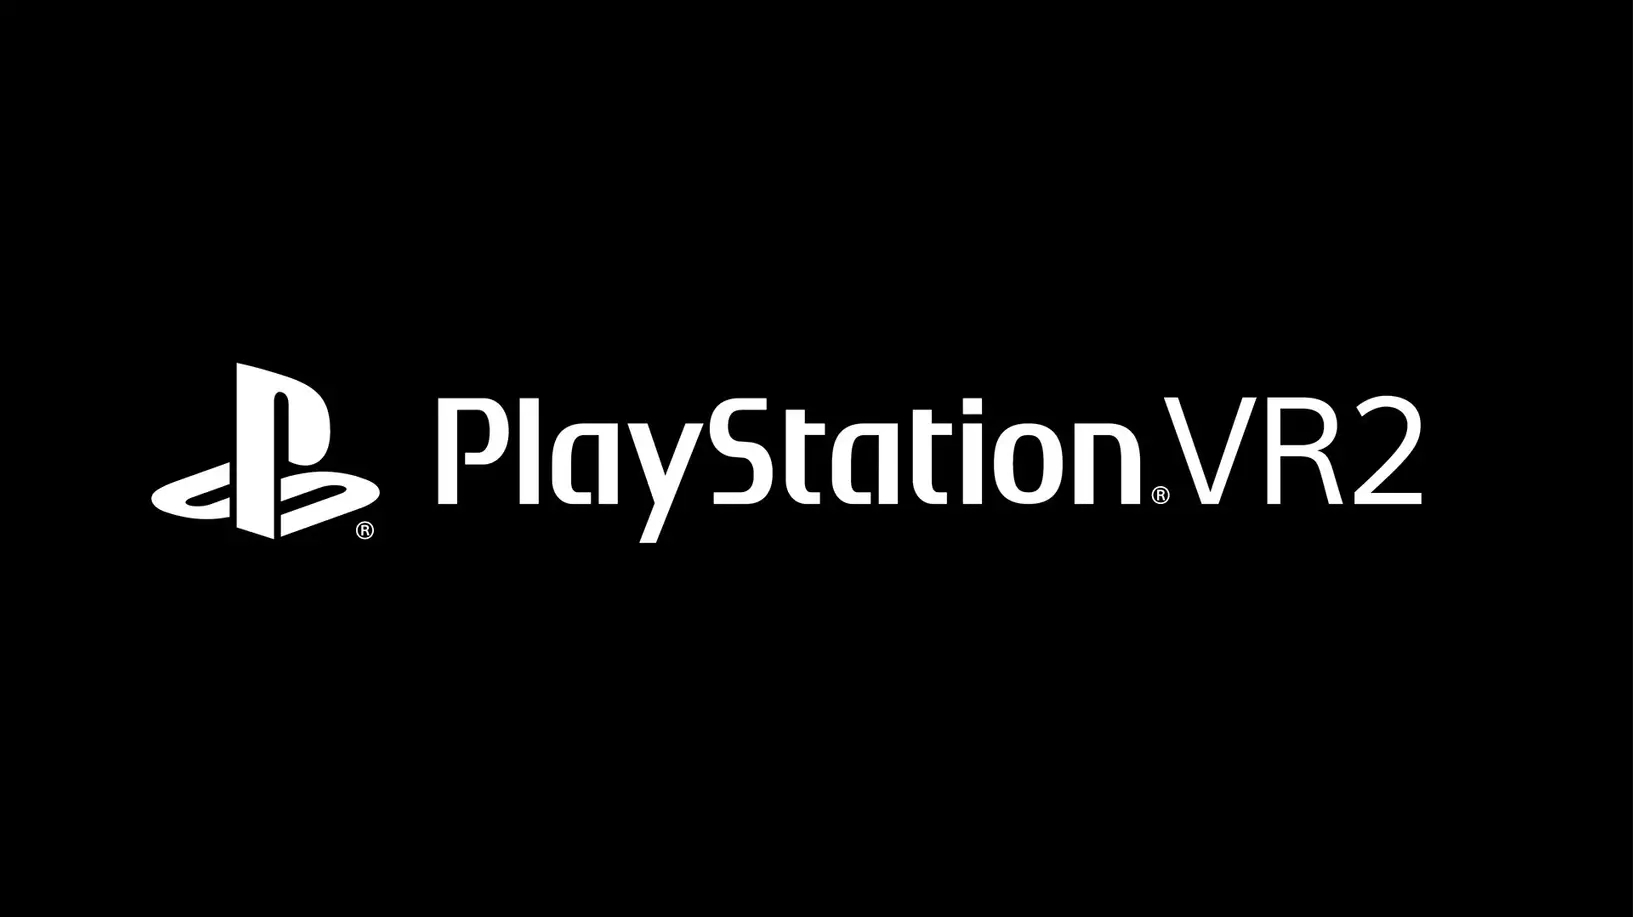 , Playstation VR2 anunciado e é acompanhado de um novo jogo VR da série Horizon